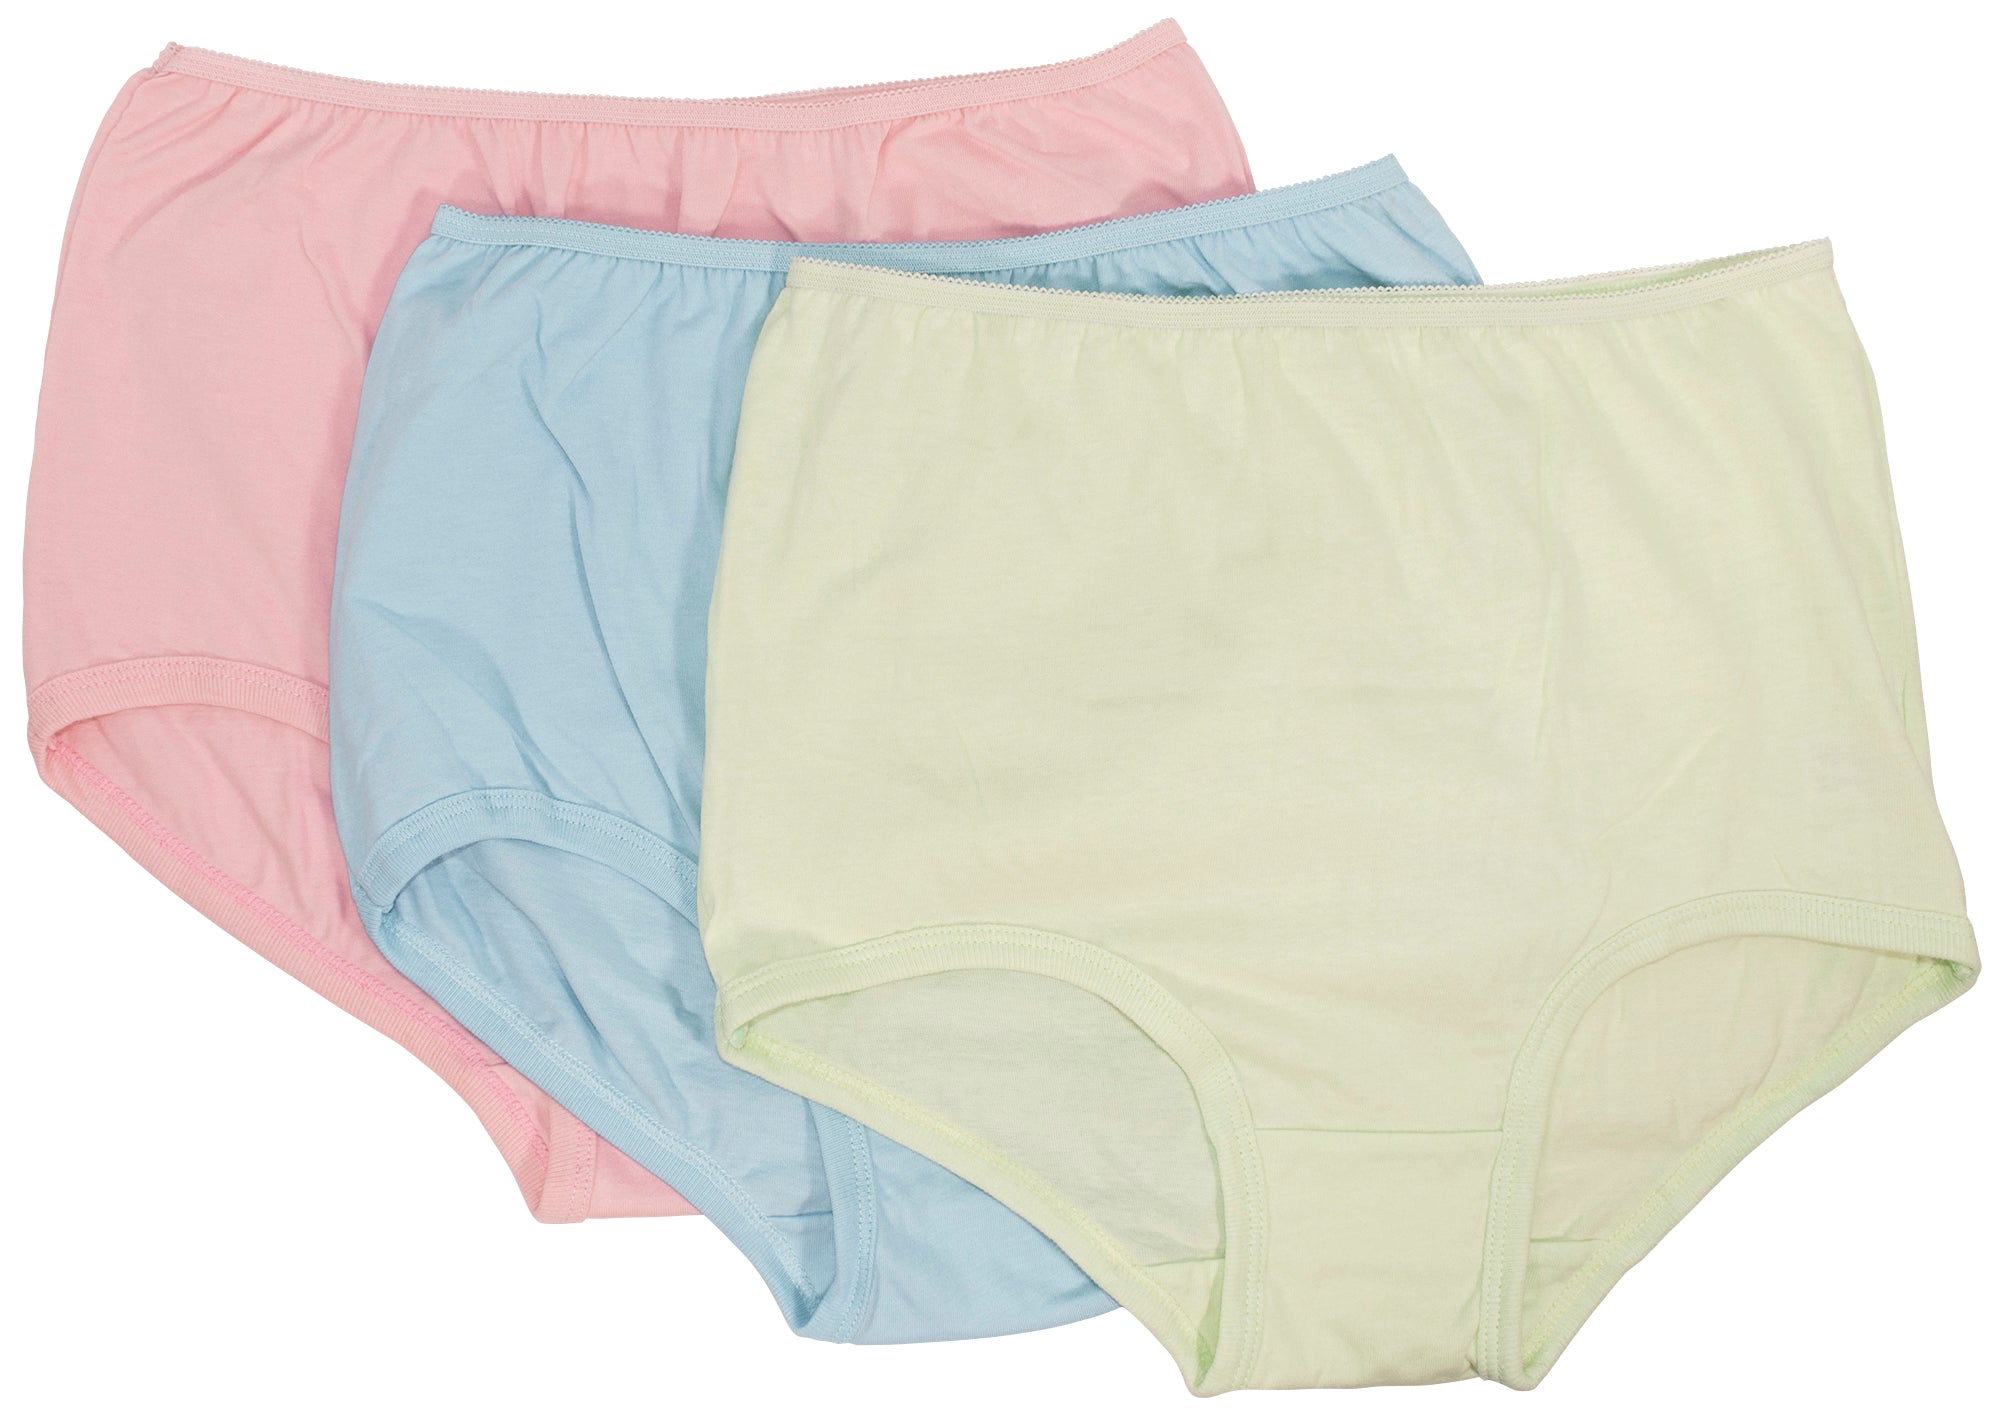 Women's Full Coverage Nylon Panty 5 Pack – Teri Lingerie